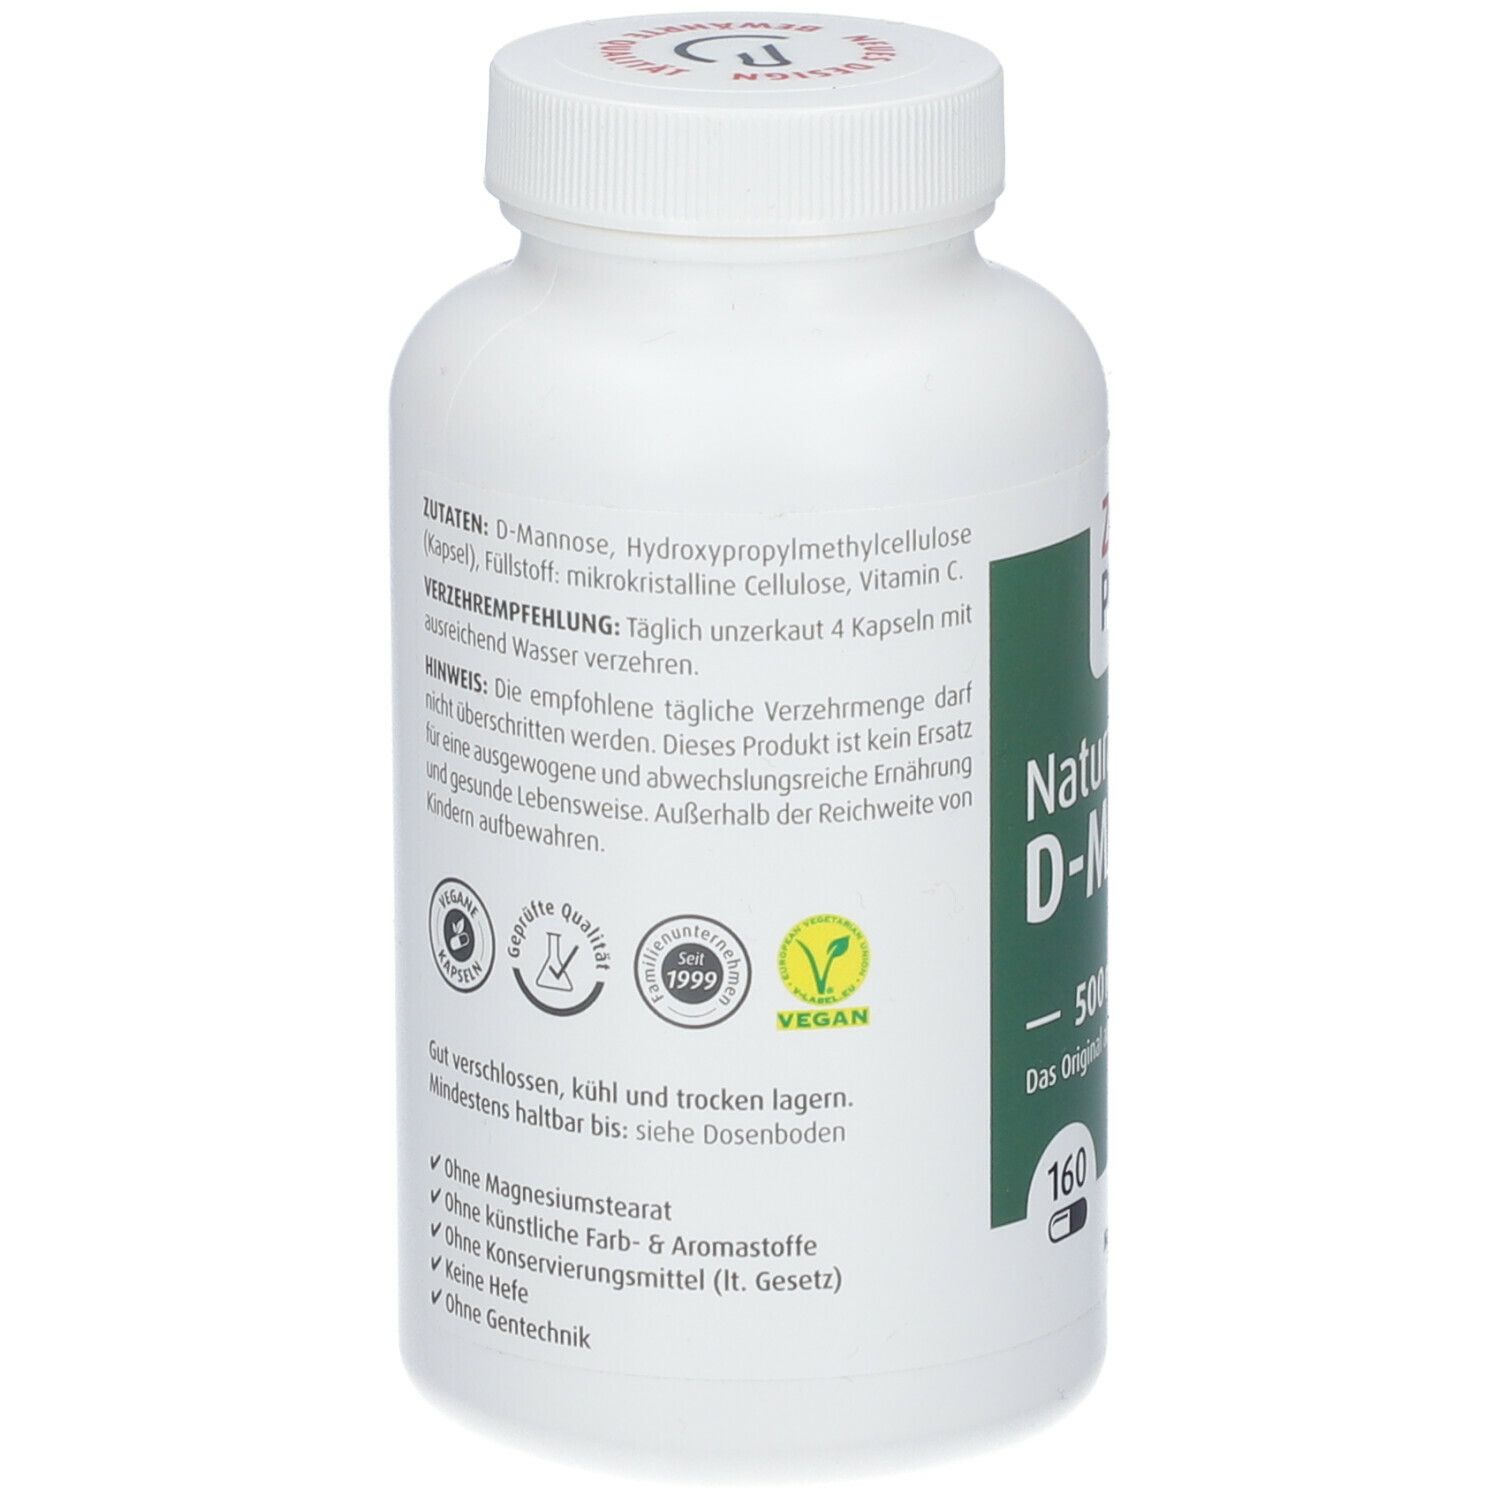 ZeinPharma® Natural D Mannose Kapseln 500 mg